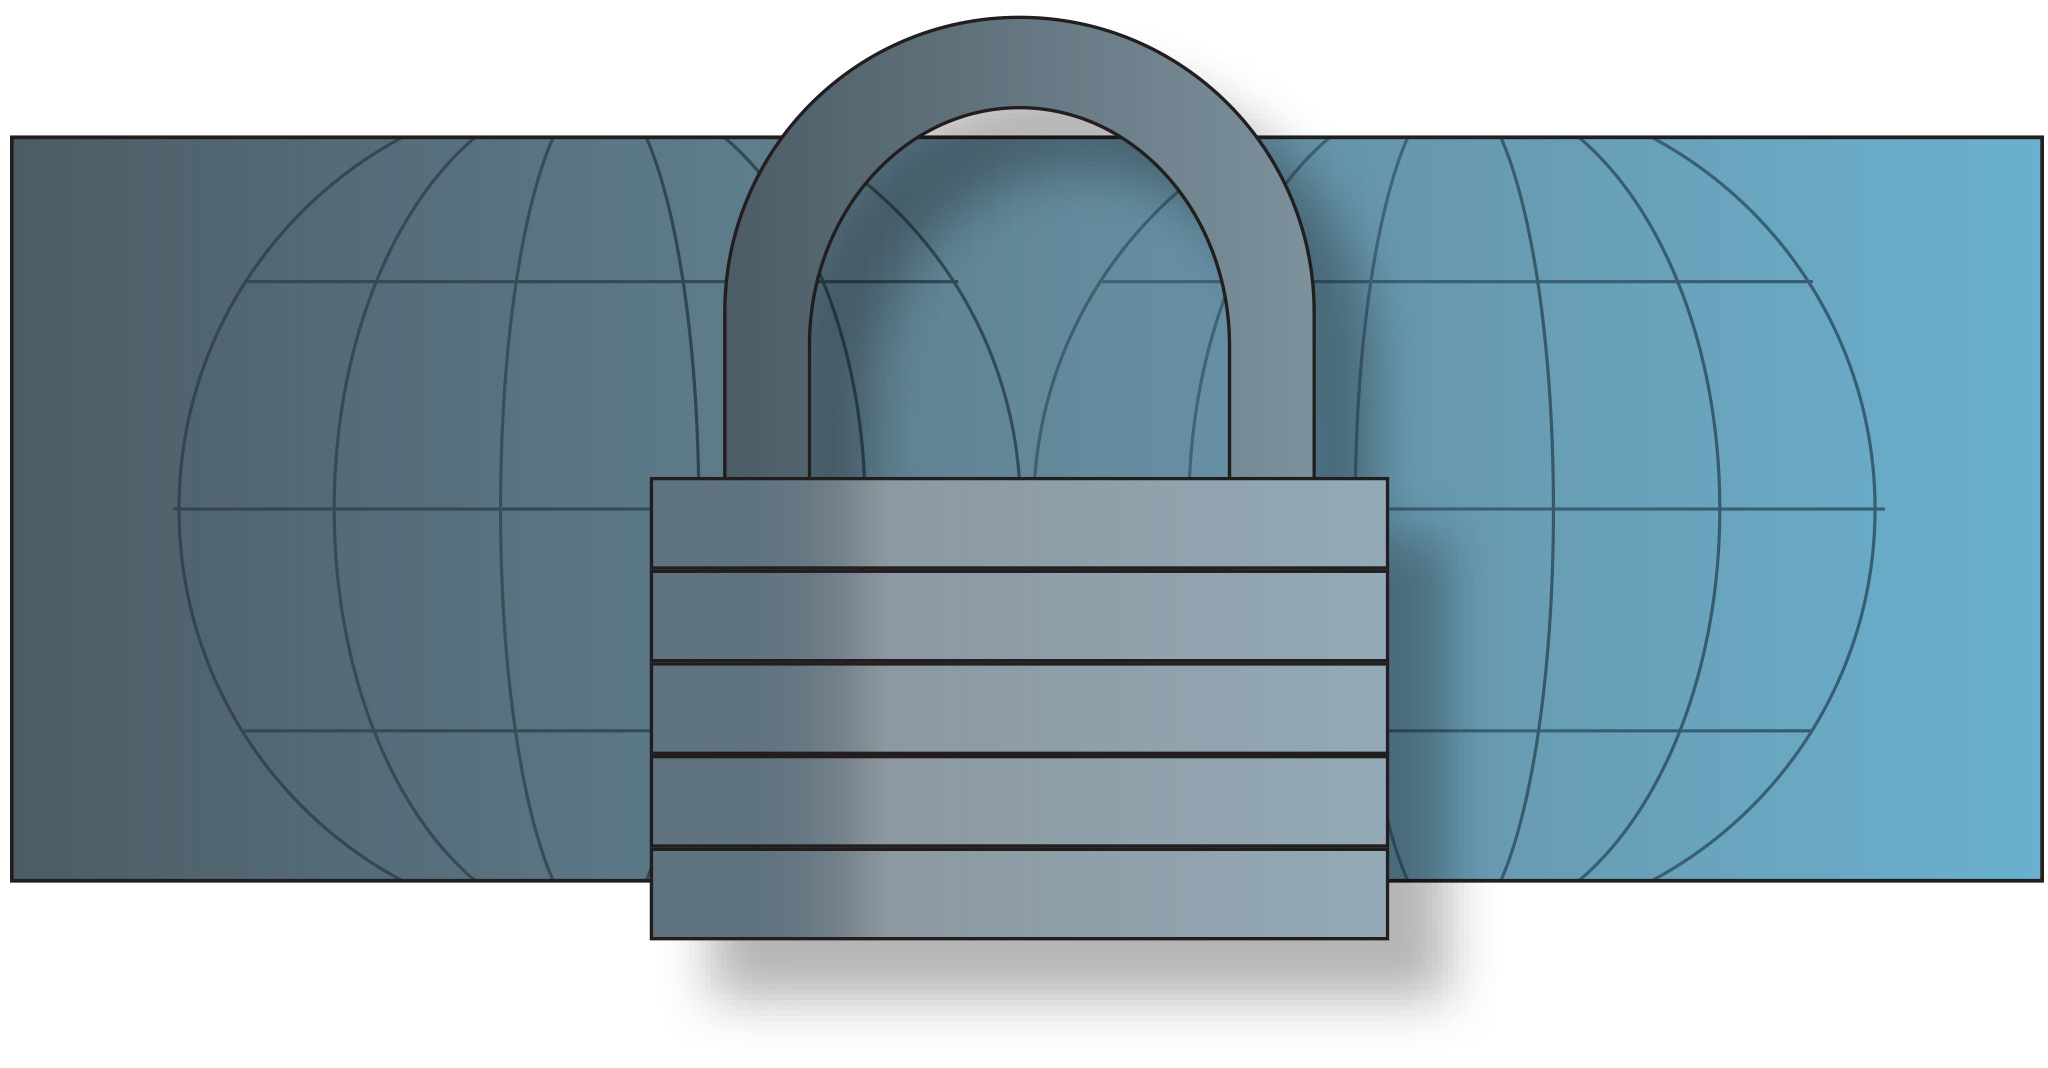 Secure Browser-Based Management